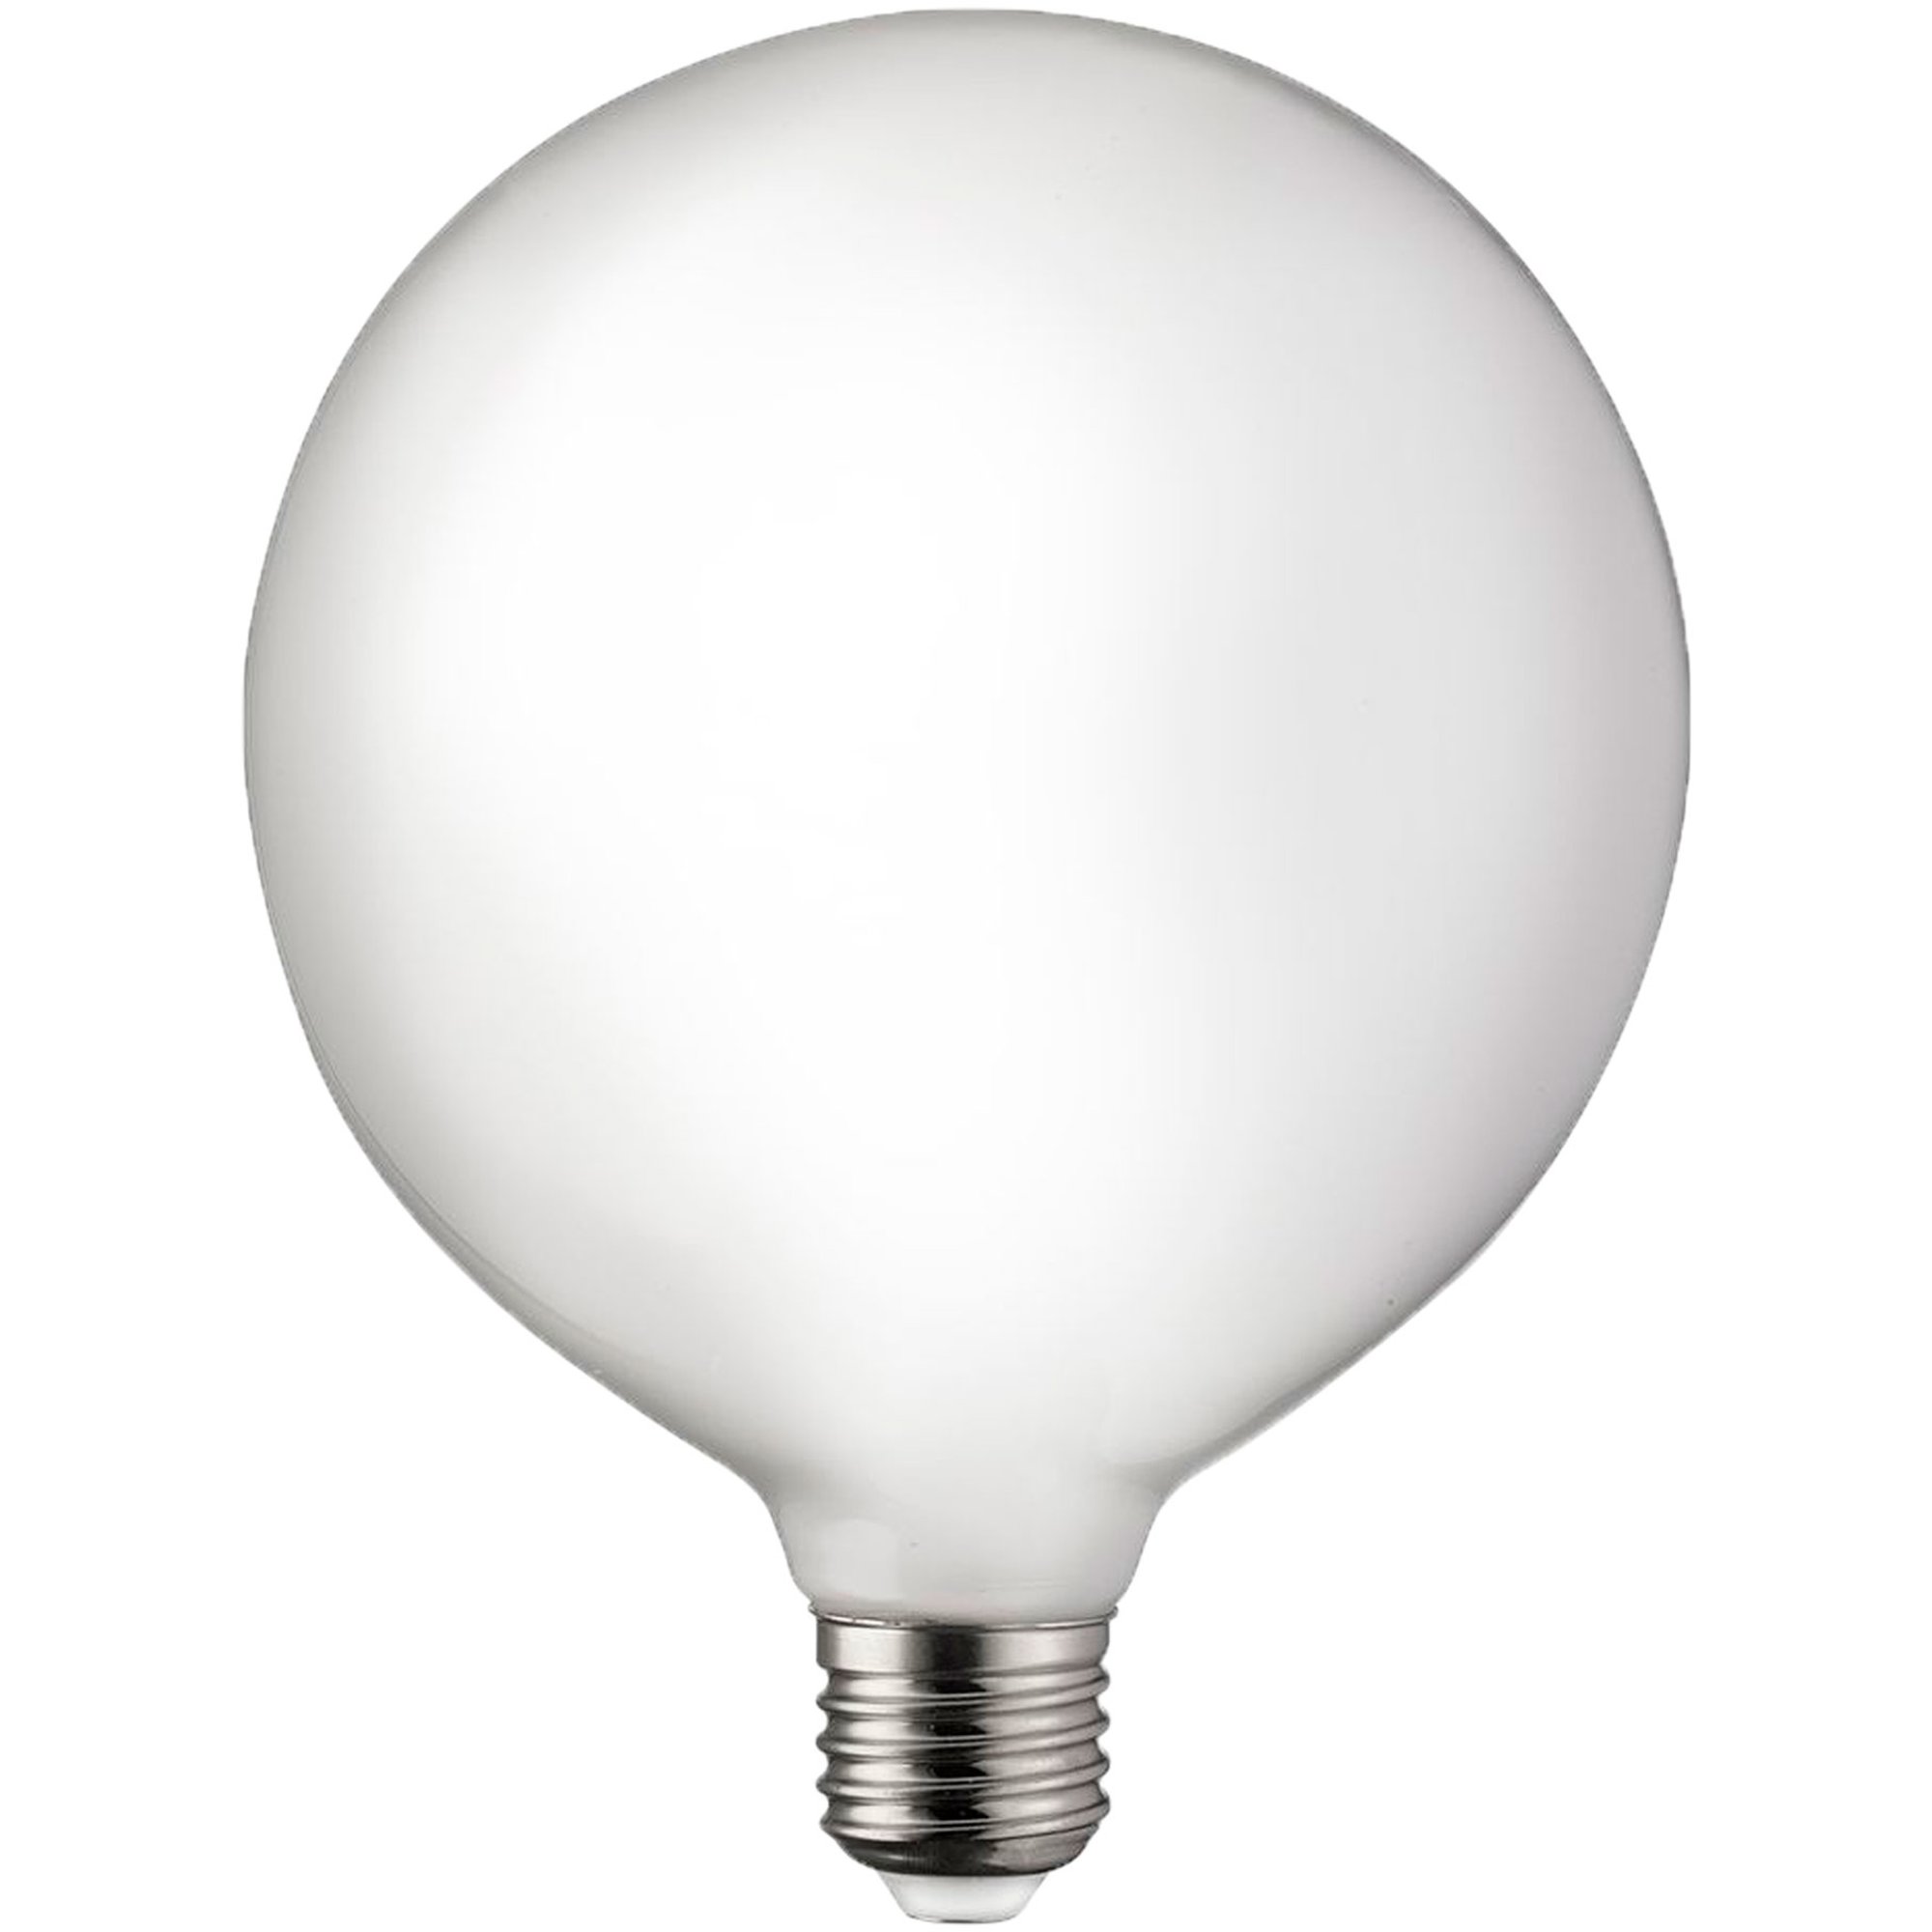 Globen Lighting Ljuskälla E27 LED 3-steg dimmer Globe 100 mm 0,4-7W, opal